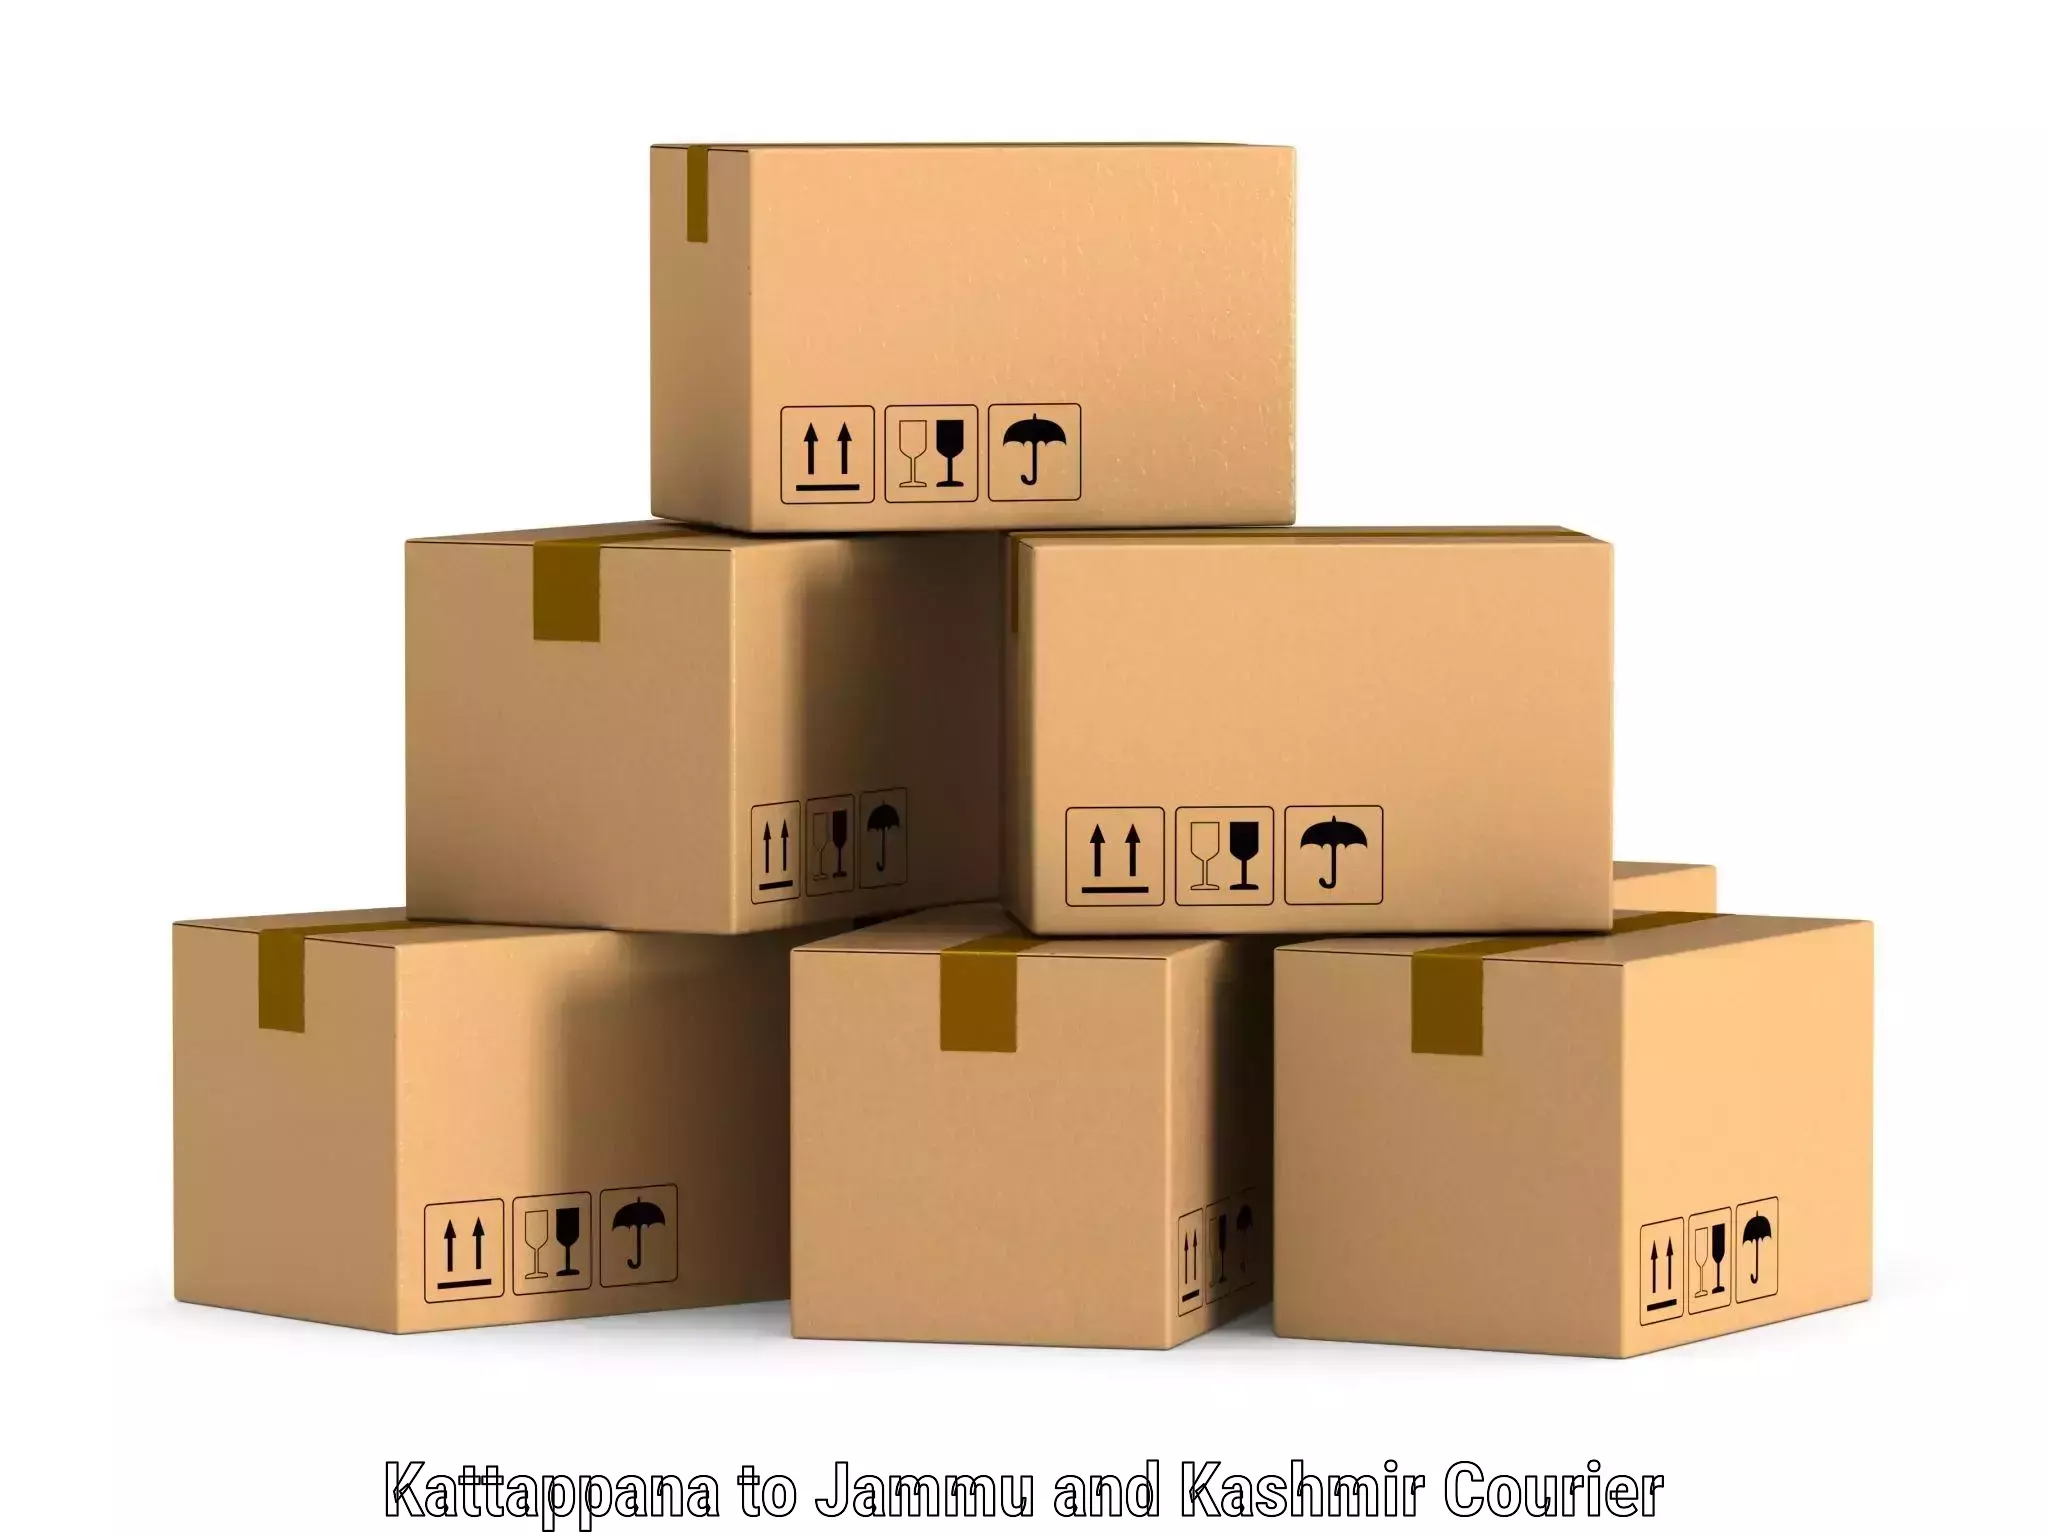 Enhanced delivery experience Kattappana to Kishtwar